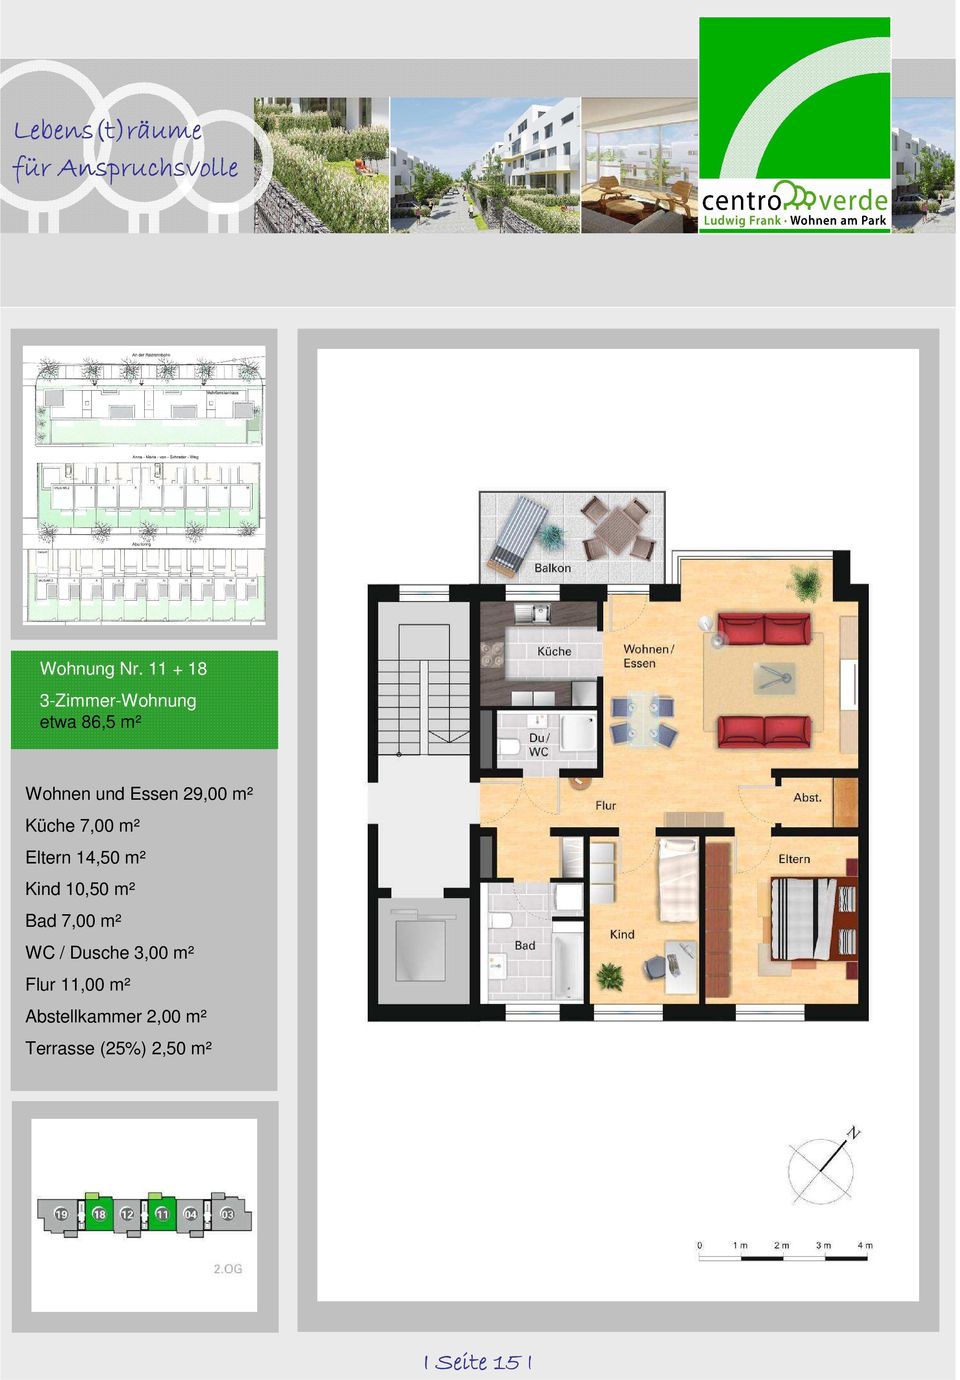 29,00 m² Küche 7,00 m² Eltern 14,50 m² Kind 10,50 m² Bad